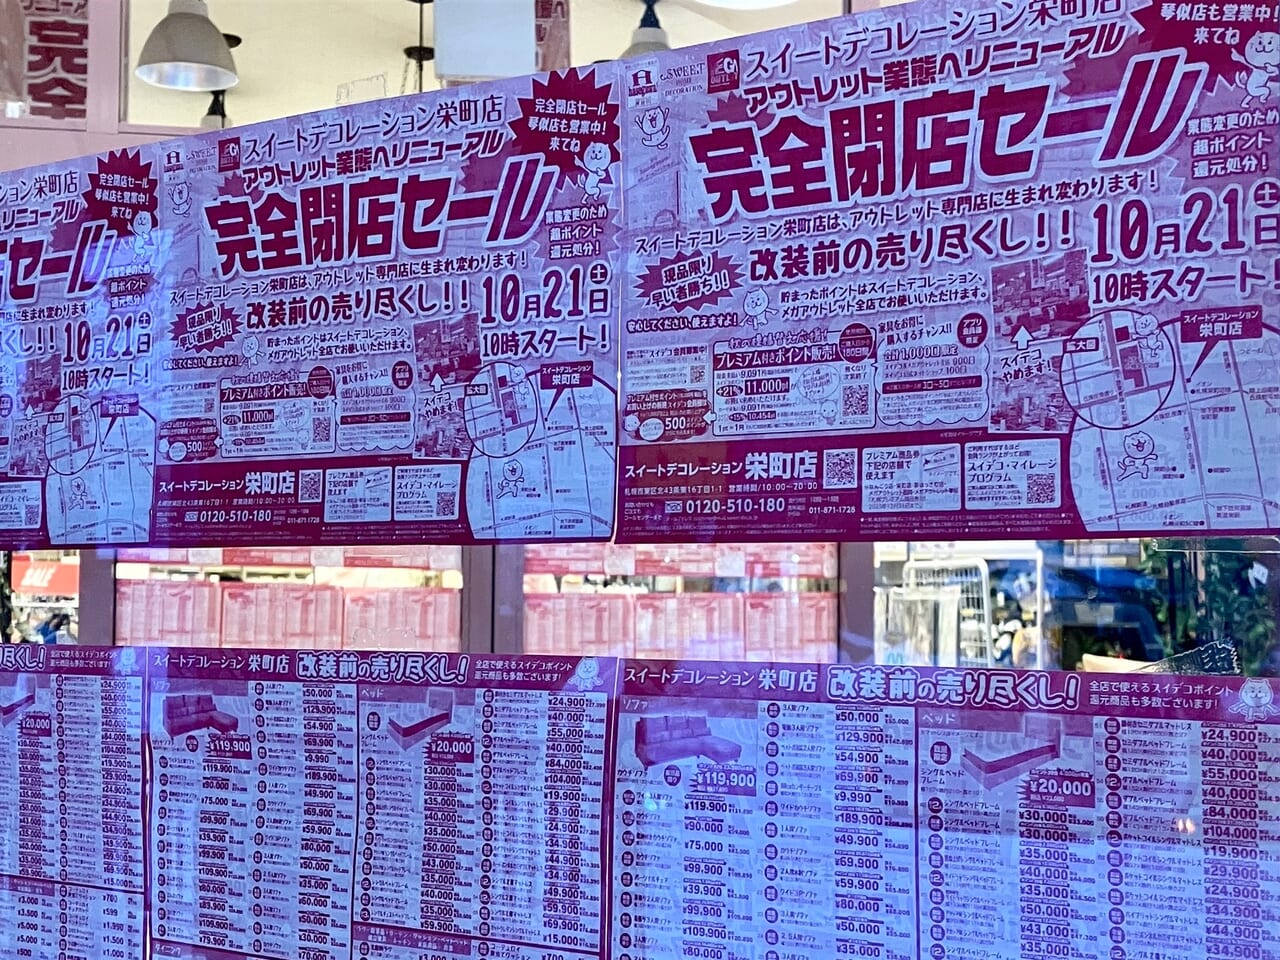 店舗入口に大きく「完全閉店セール開催中」の文字が。「スイートデコレーション 栄町店」が閉店セール中です。